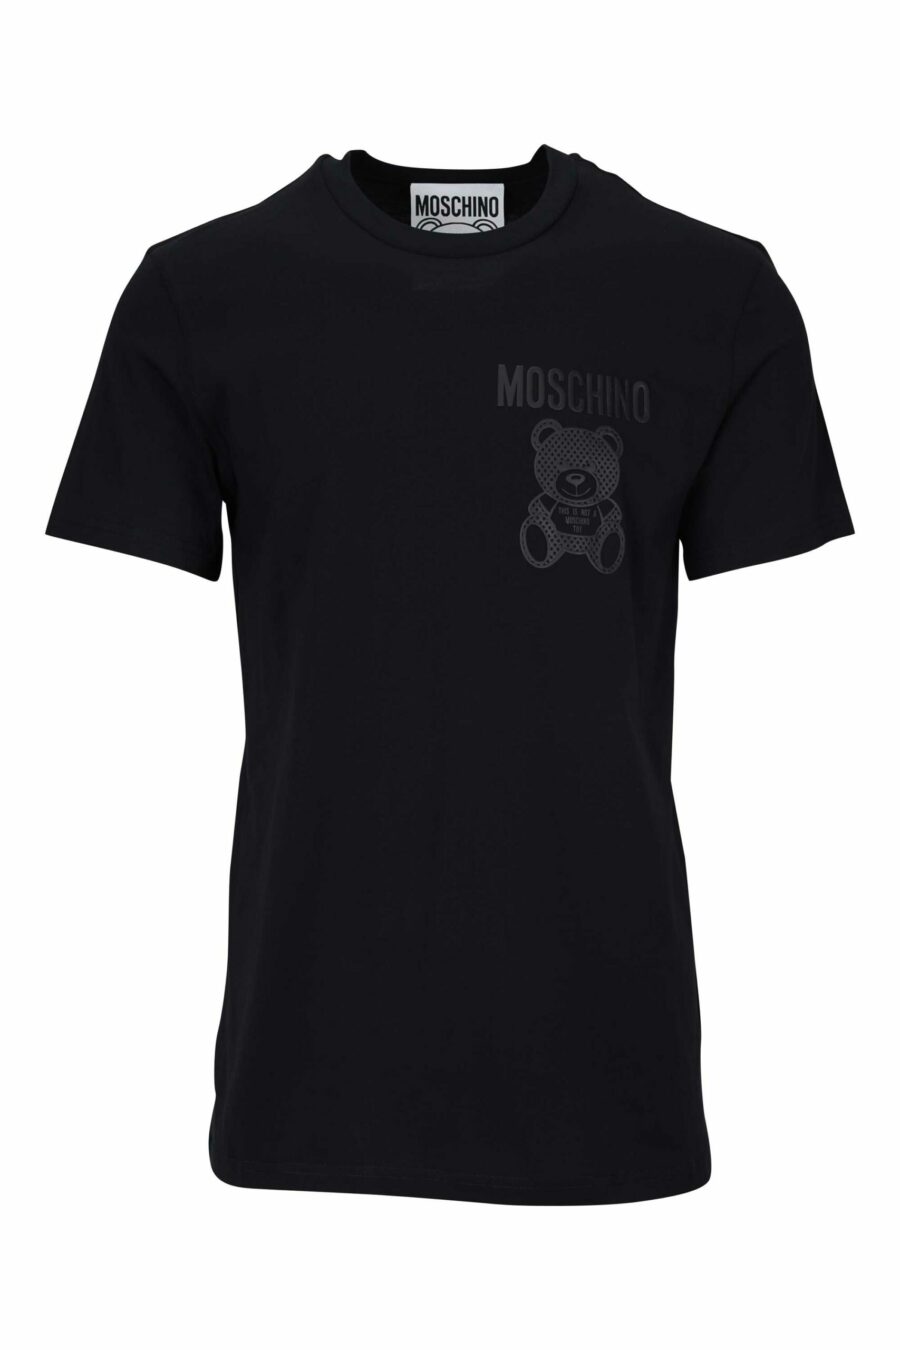 Camiseta negra con minilogo oso en puntos monocromático - 667113455969 scaled